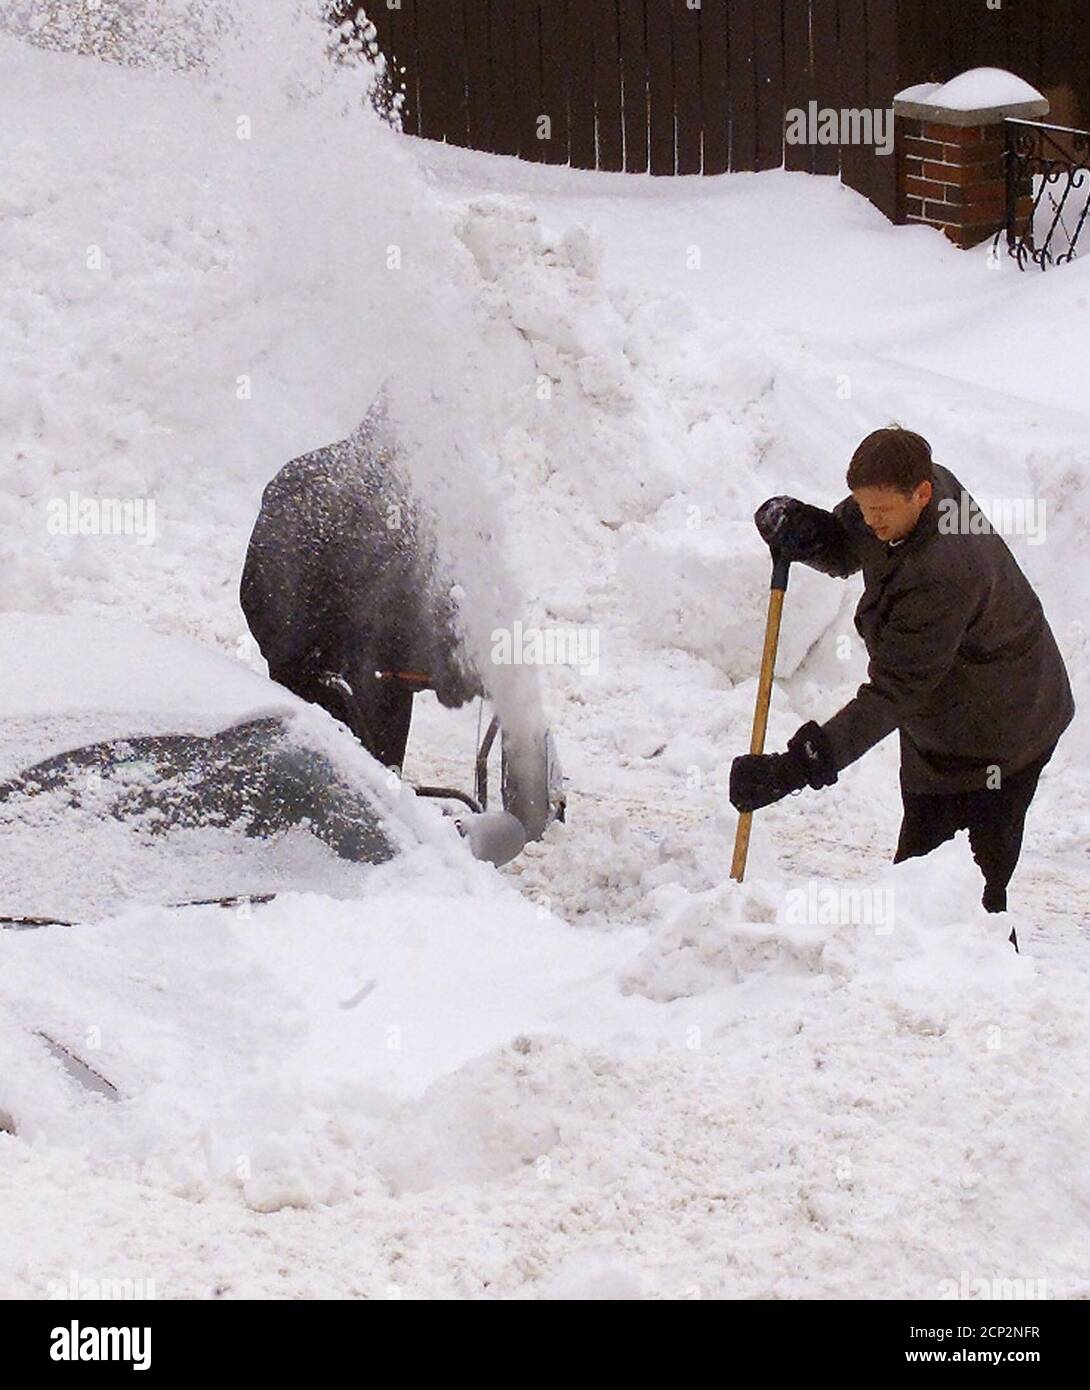 Les habitants de la banlieue de Boston, Medford, Massachusetts, creusent leurs voitures hors de la neige le 18 février 2003 après un blizzard important a frappé la région de Boston. La tempête lente a déversé plus de 27 pouces de neige sur Boston alors qu'elle terminait sa marche sur la côte est des États-Unis, des Carolinas à la Nouvelle-Angleterre, fermant la plupart de la région pendant plusieurs jours. REUTERS/Jim Bourg JRB Banque D'Images